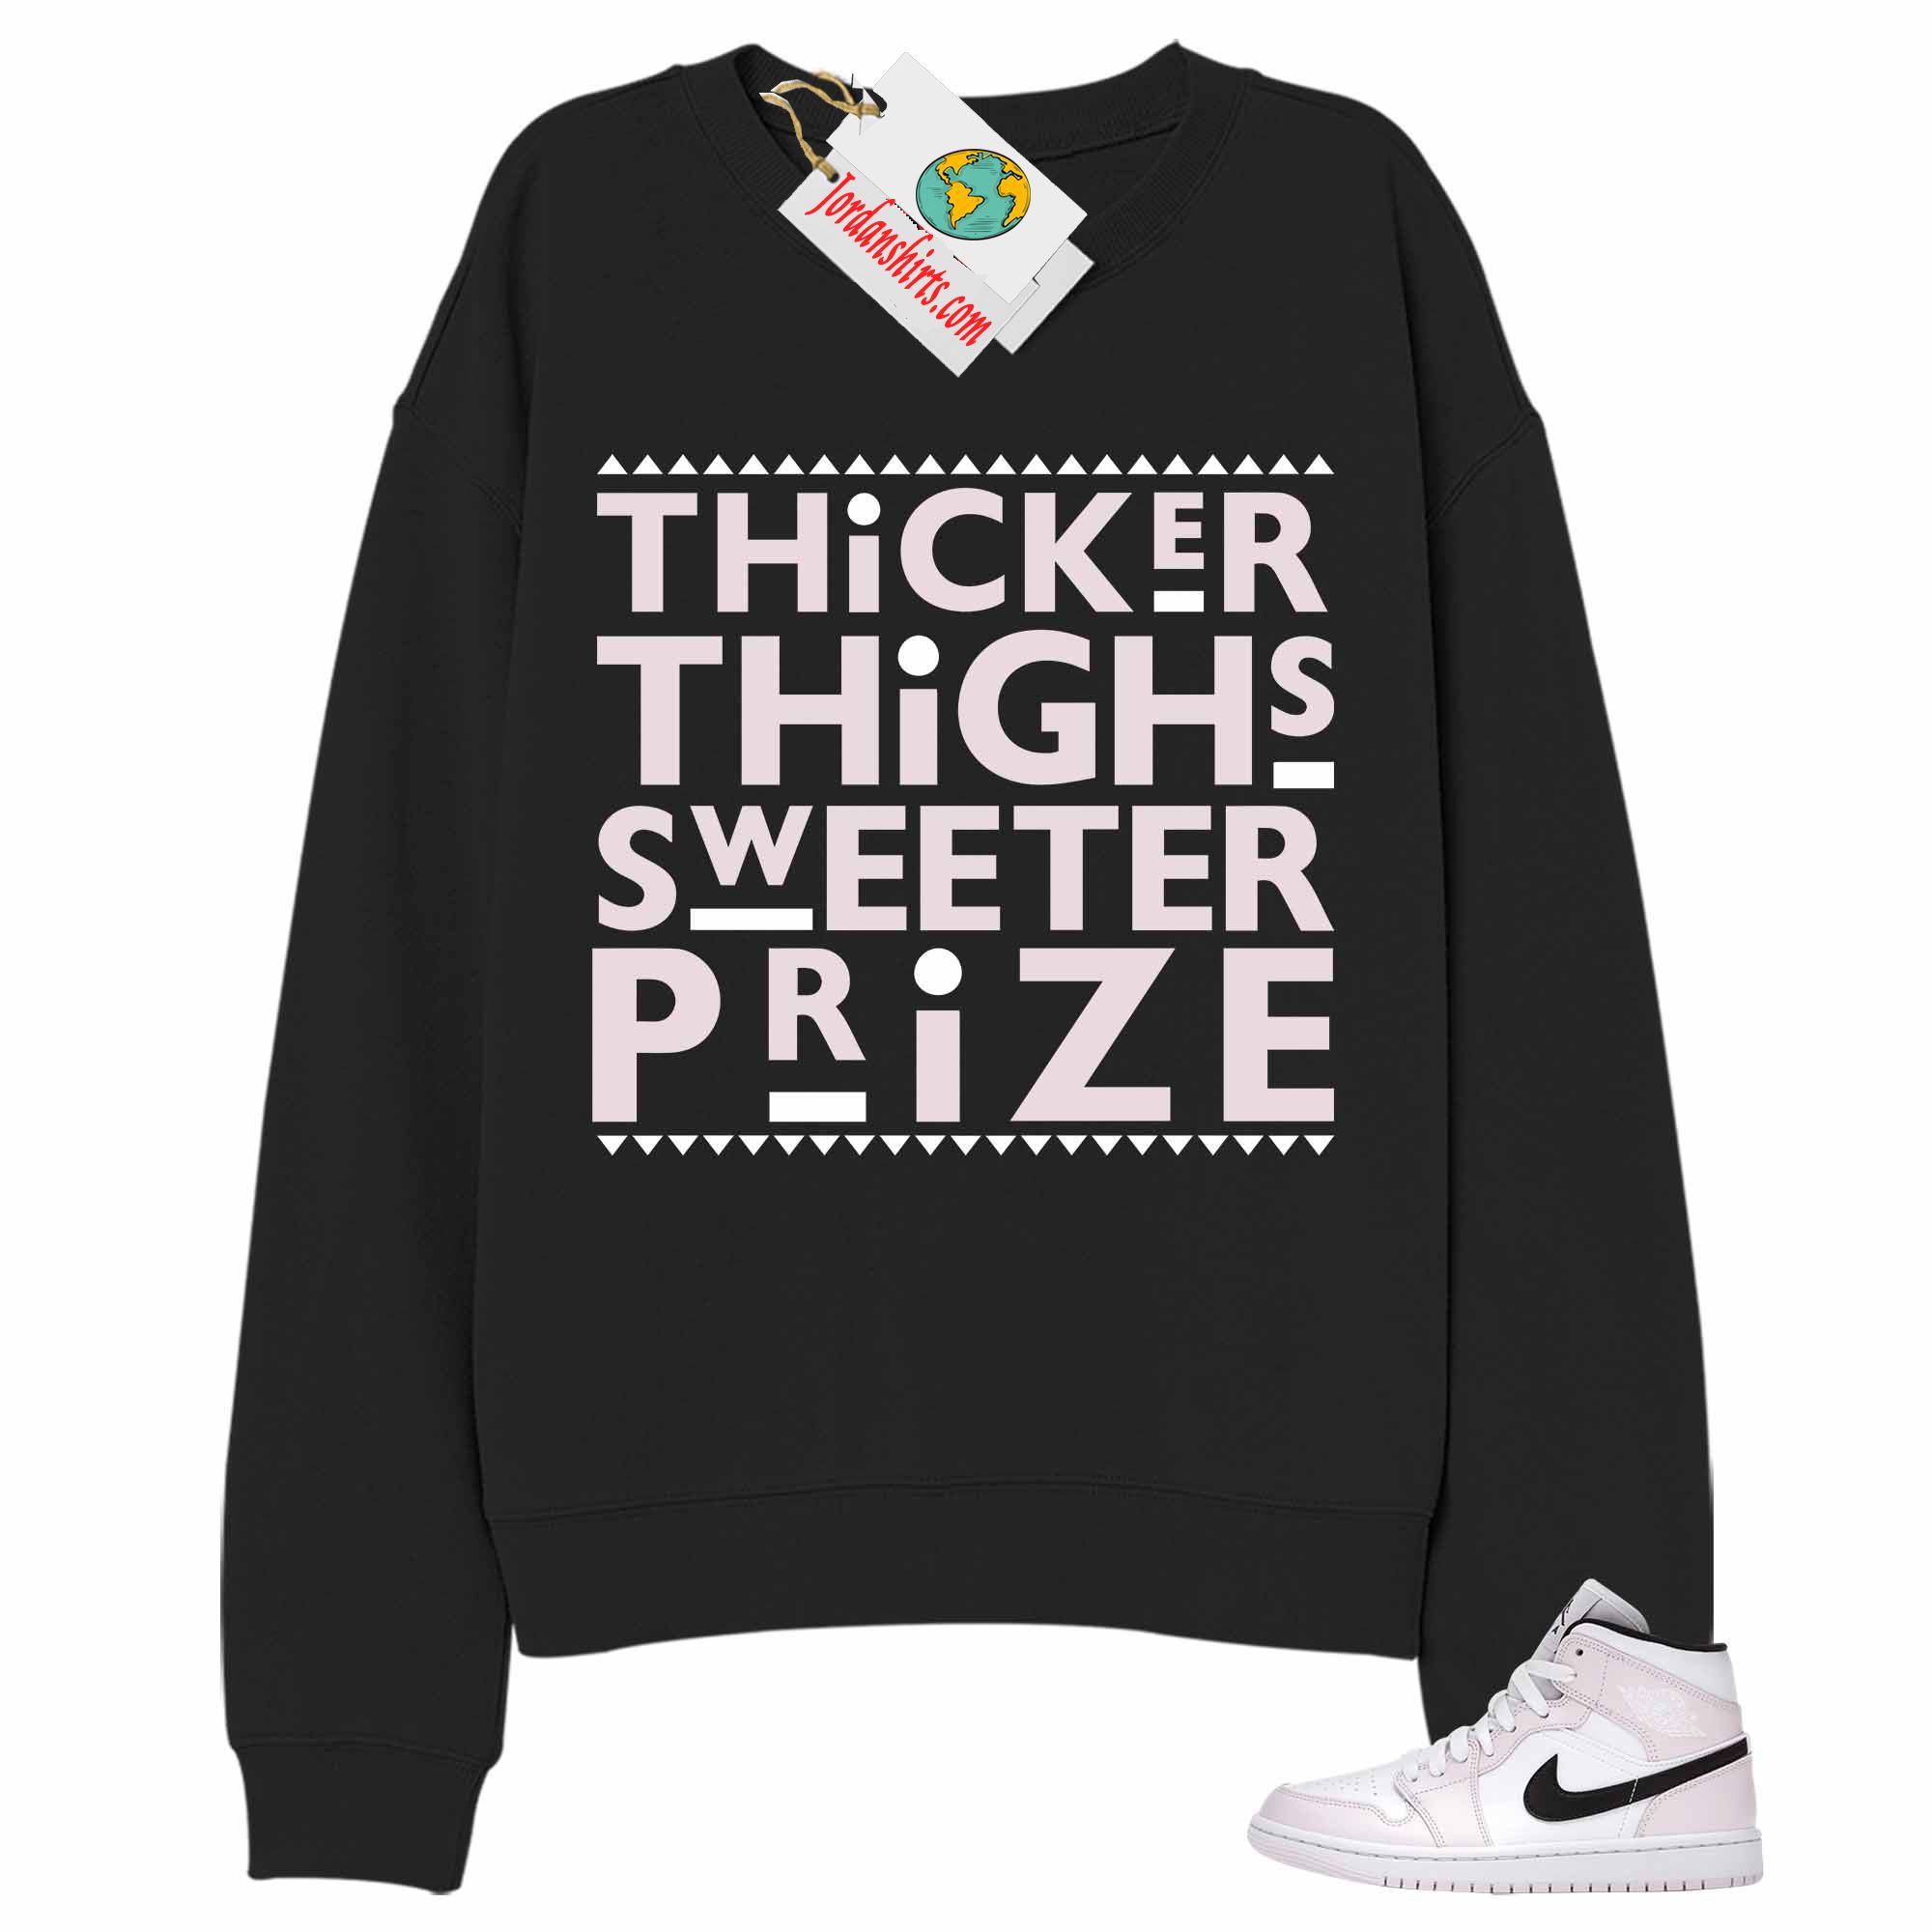 Jordan 1 Sweatshirt, Thicker Thighs Sweeter Prize Black Sweatshirt Air Jordan 1 Barely Rose 1s Plus Size Up To 5xl